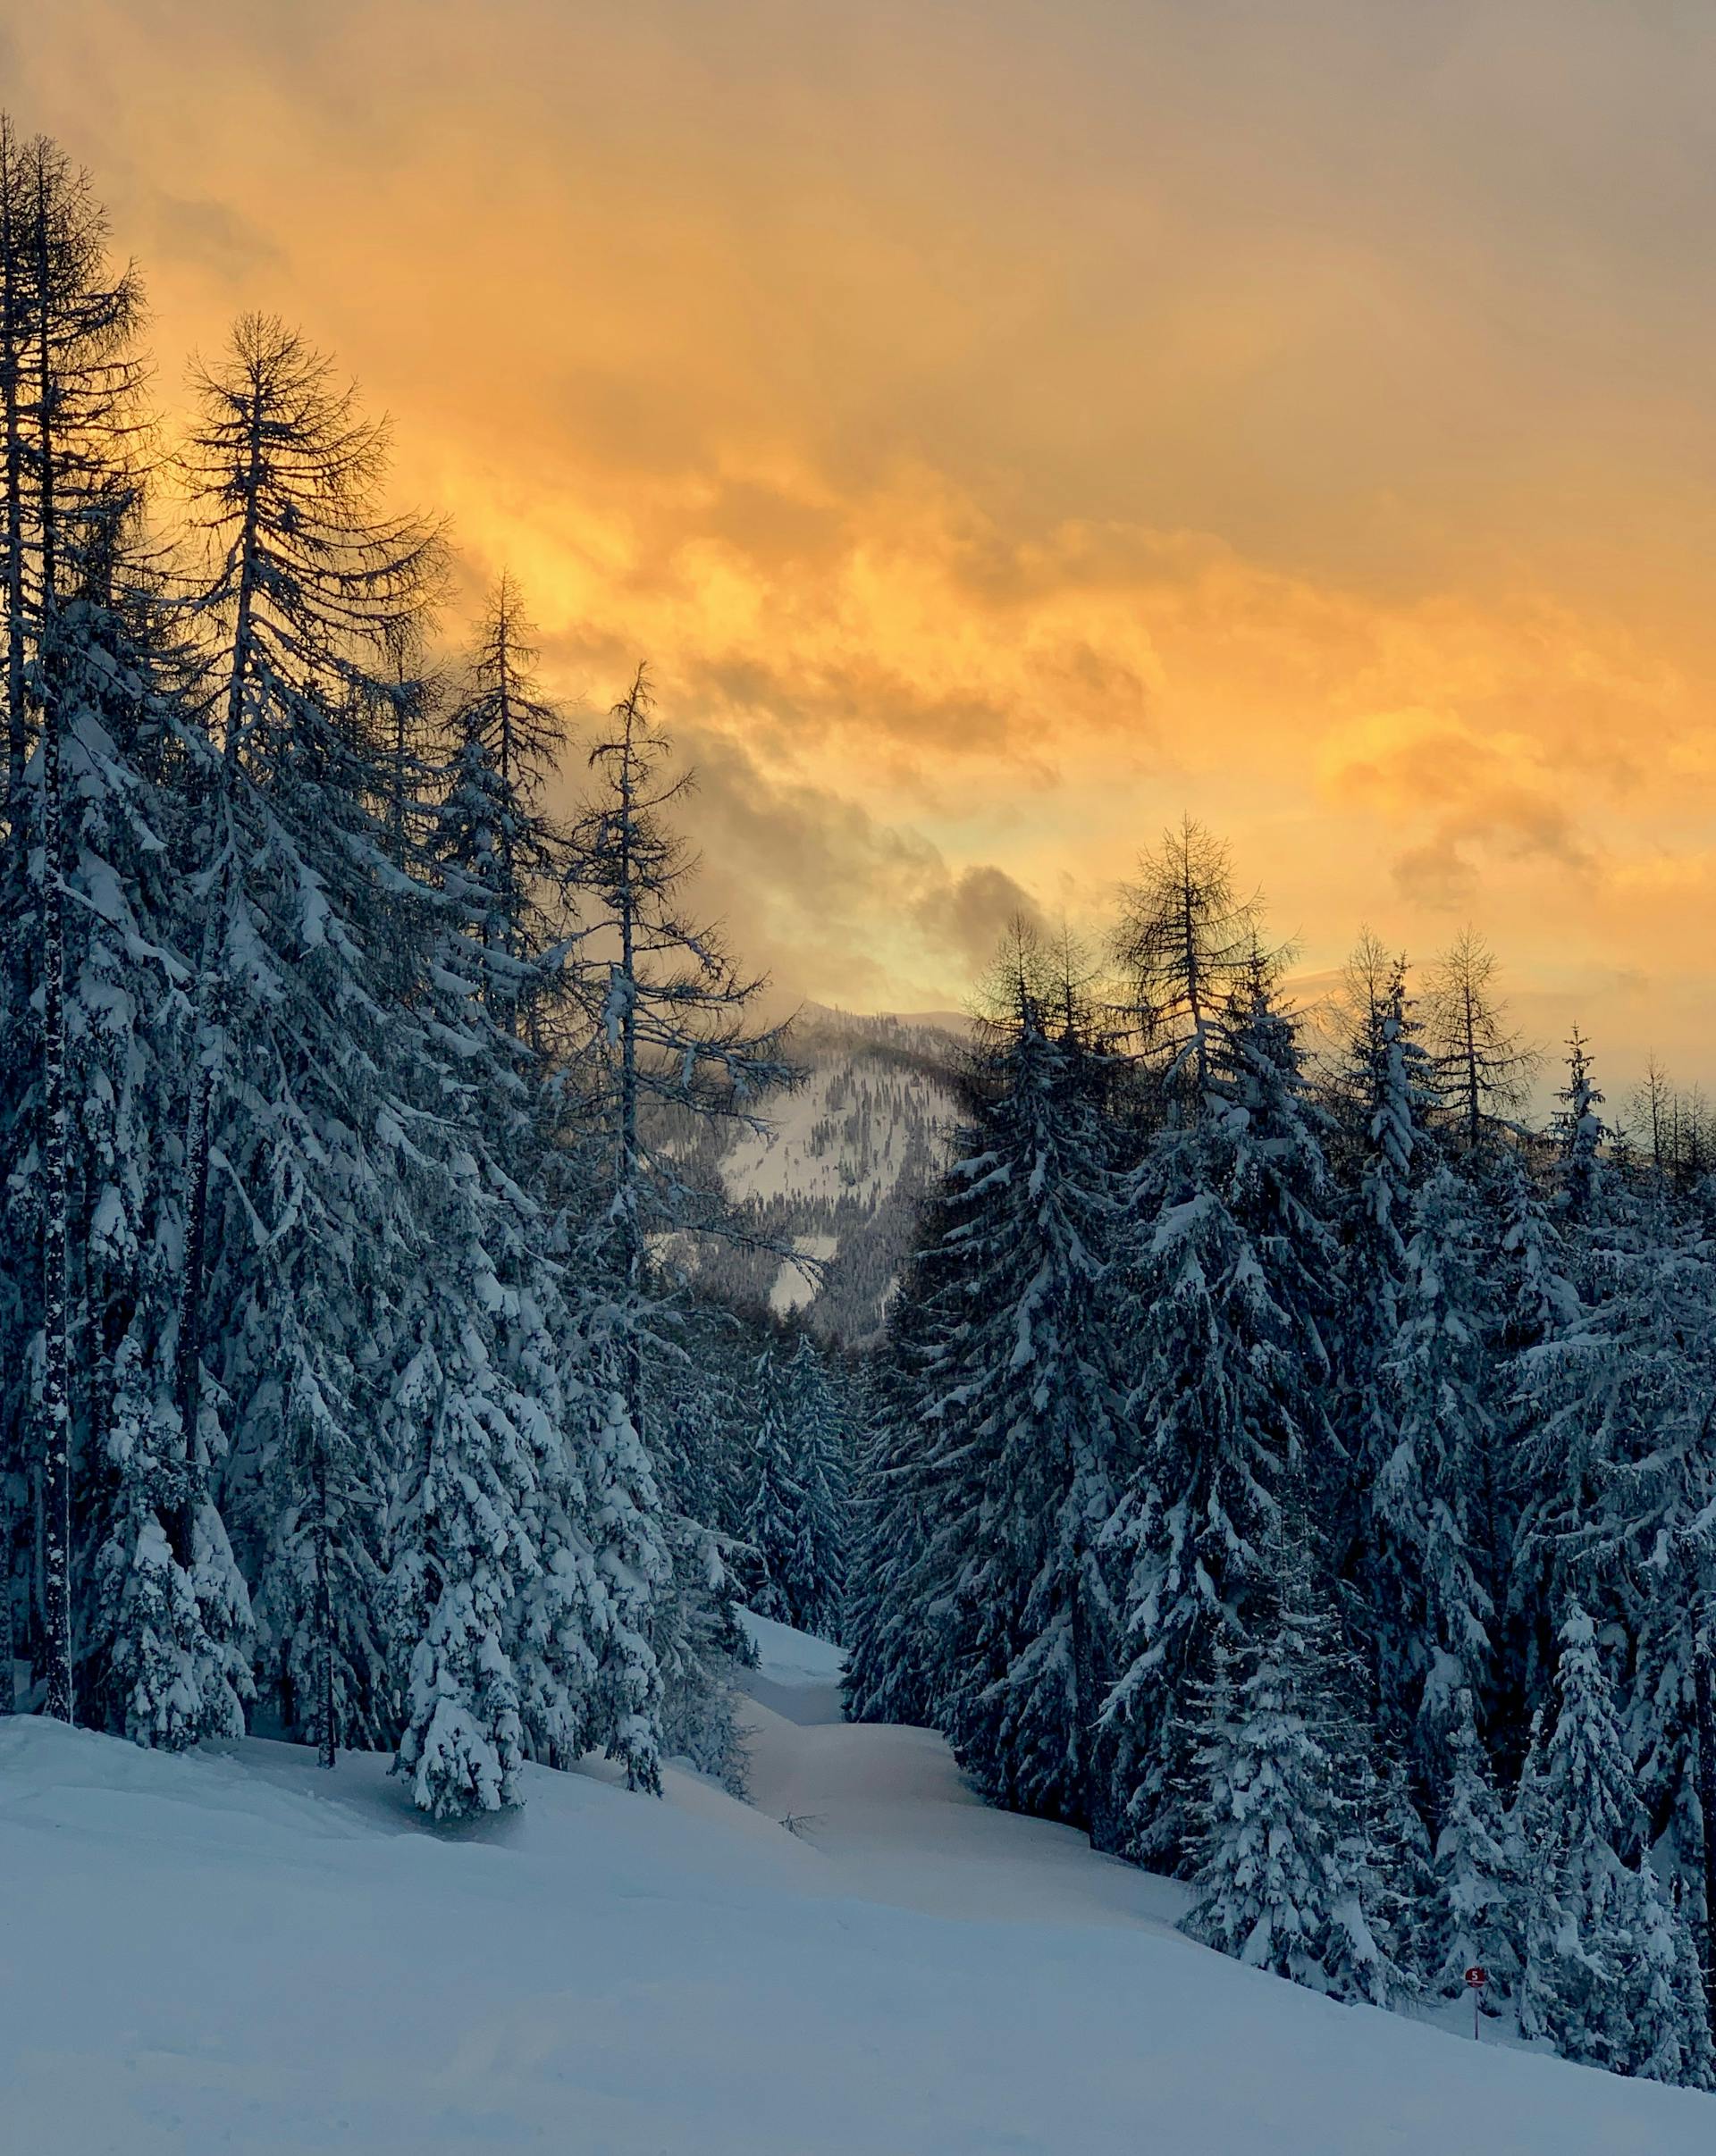 Sunset over snow-capped trees in Austrian ski resort